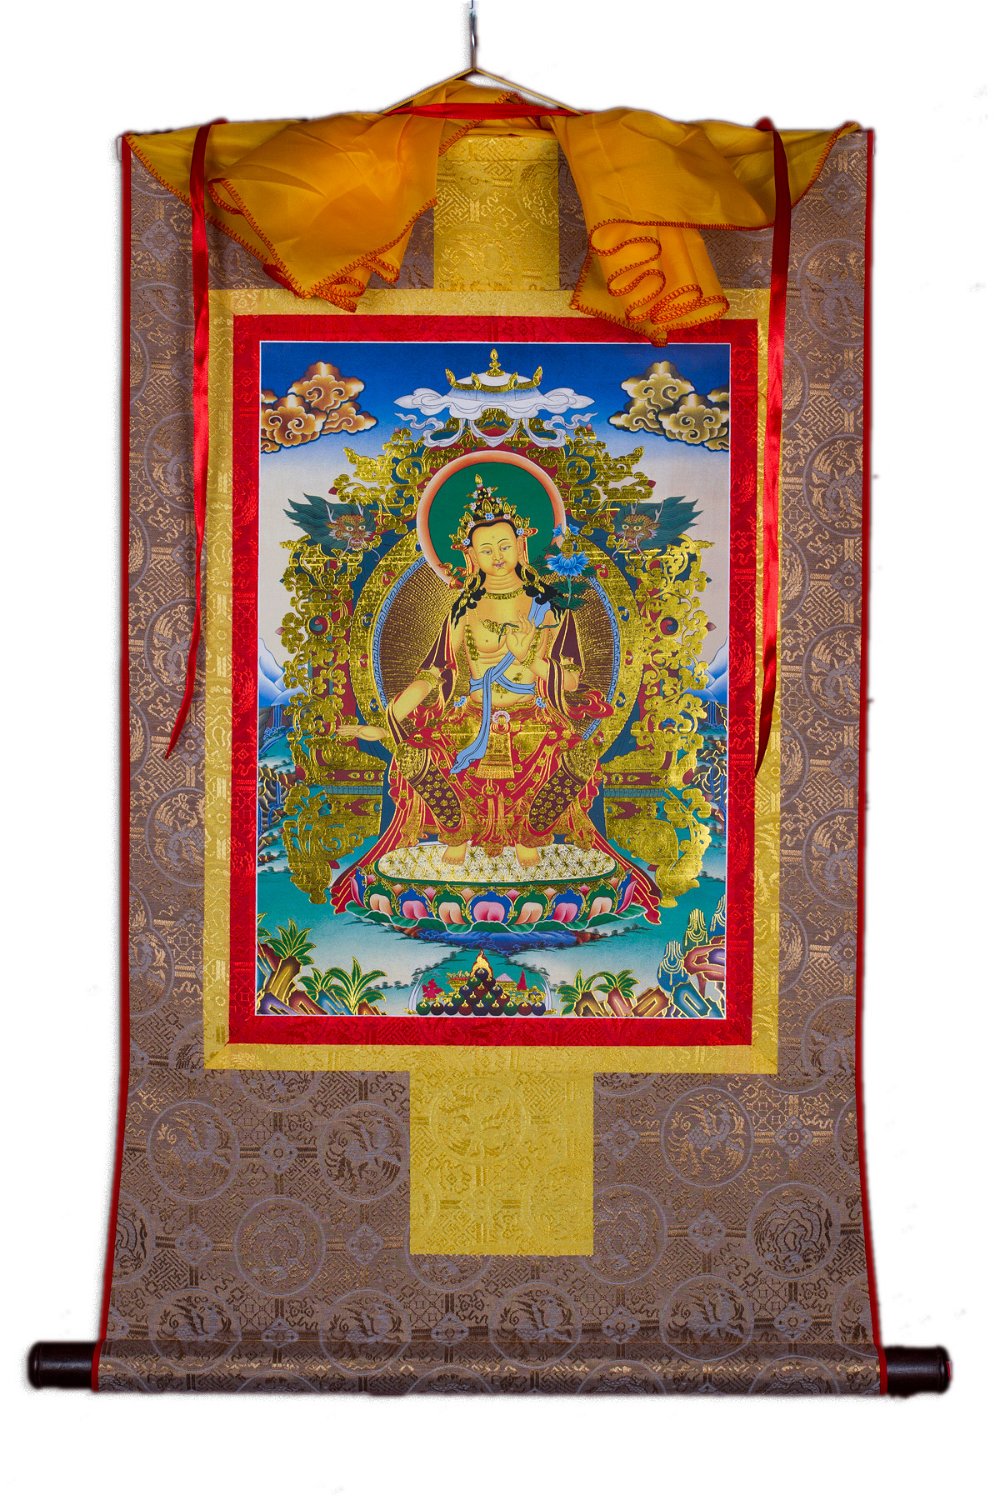 Тханка Будда Майтрея (печатная, 51 х 83 см), ~ 51 х 83 см, изображение: ~ 32 х 44 см